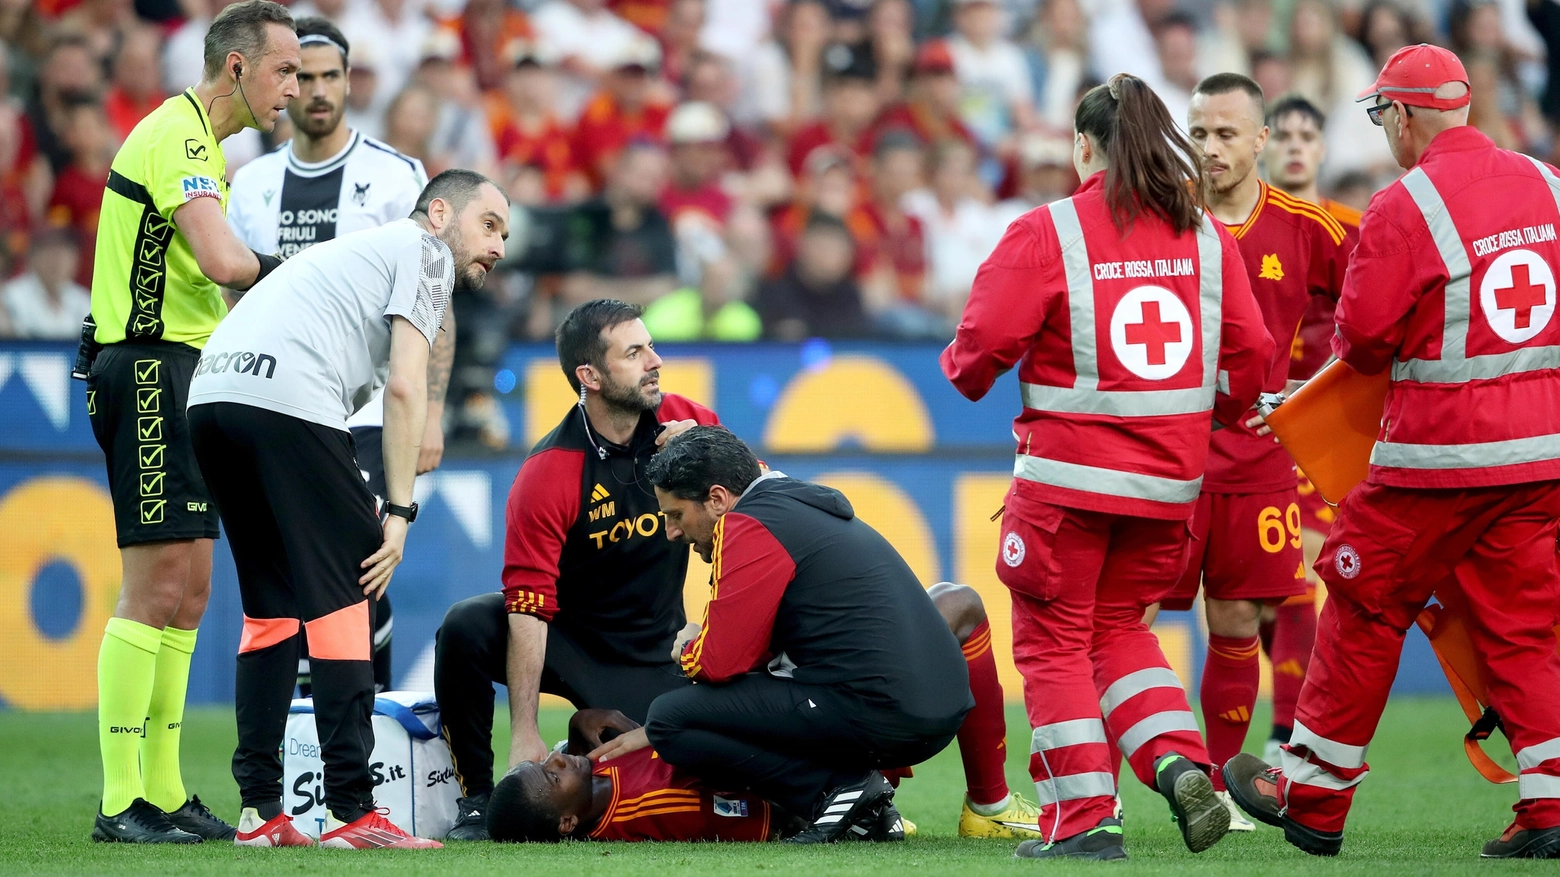 Il giocatore della Roma soccorso in campo a Udine